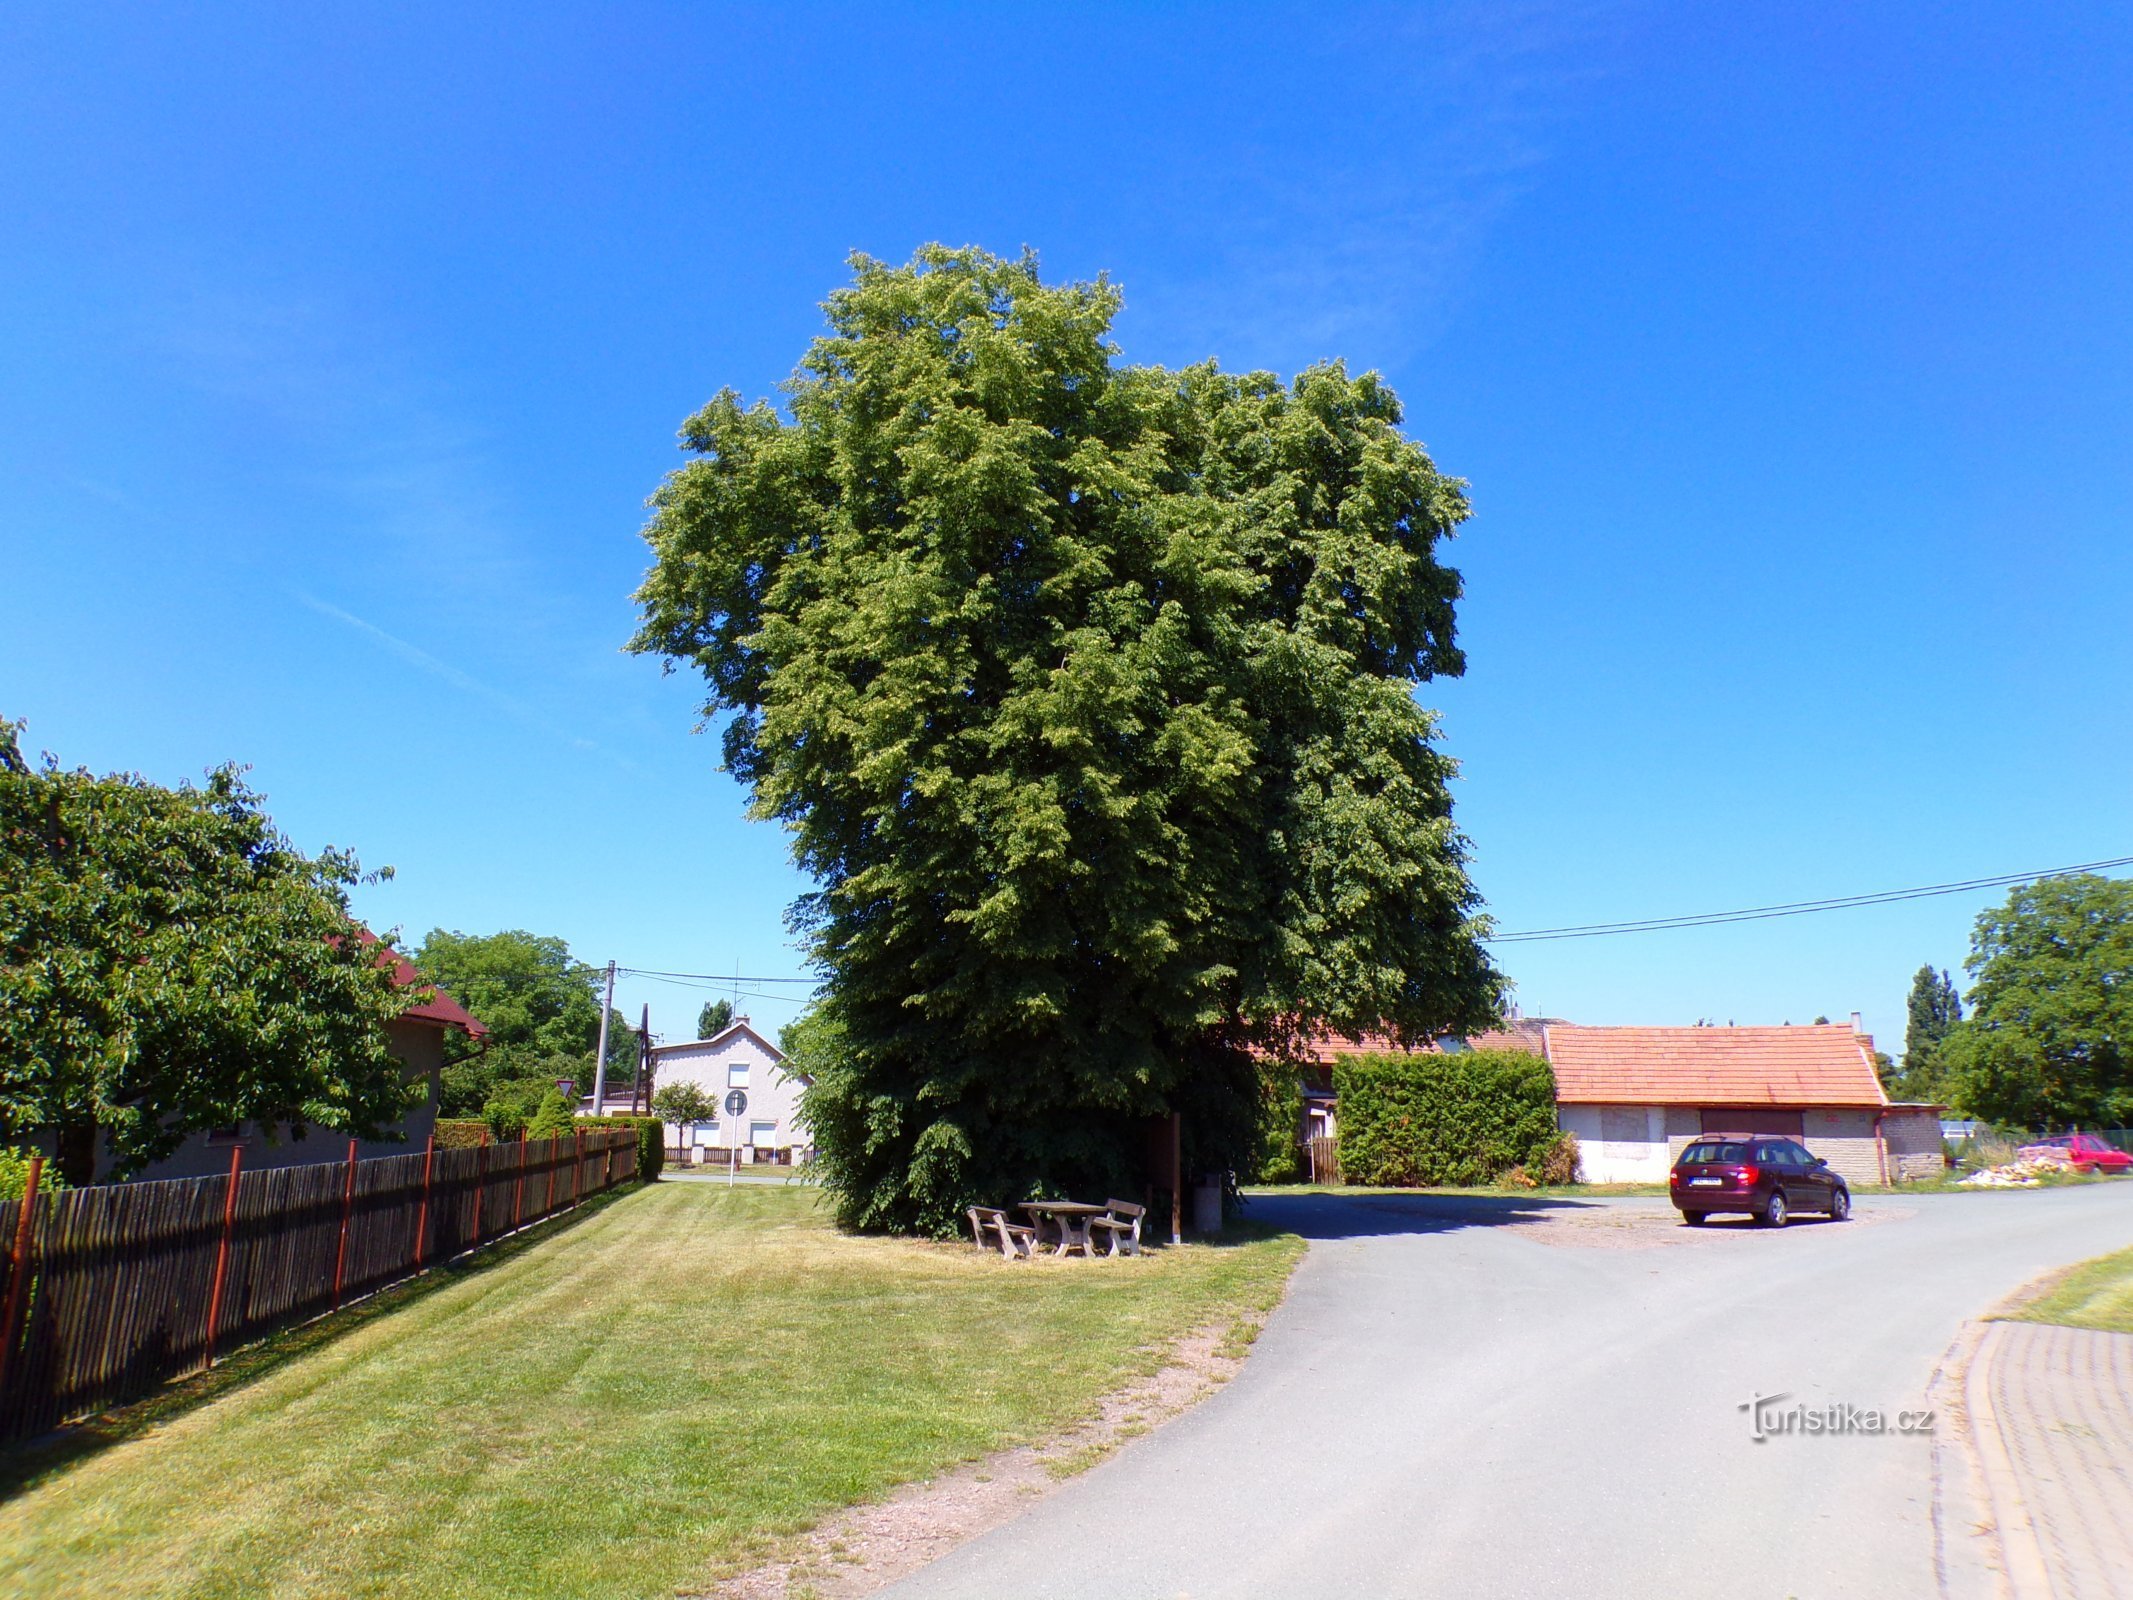 Lindeträd nära Kuklinkorset (Dobřenice, 15.6.2022/XNUMX/XNUMX)